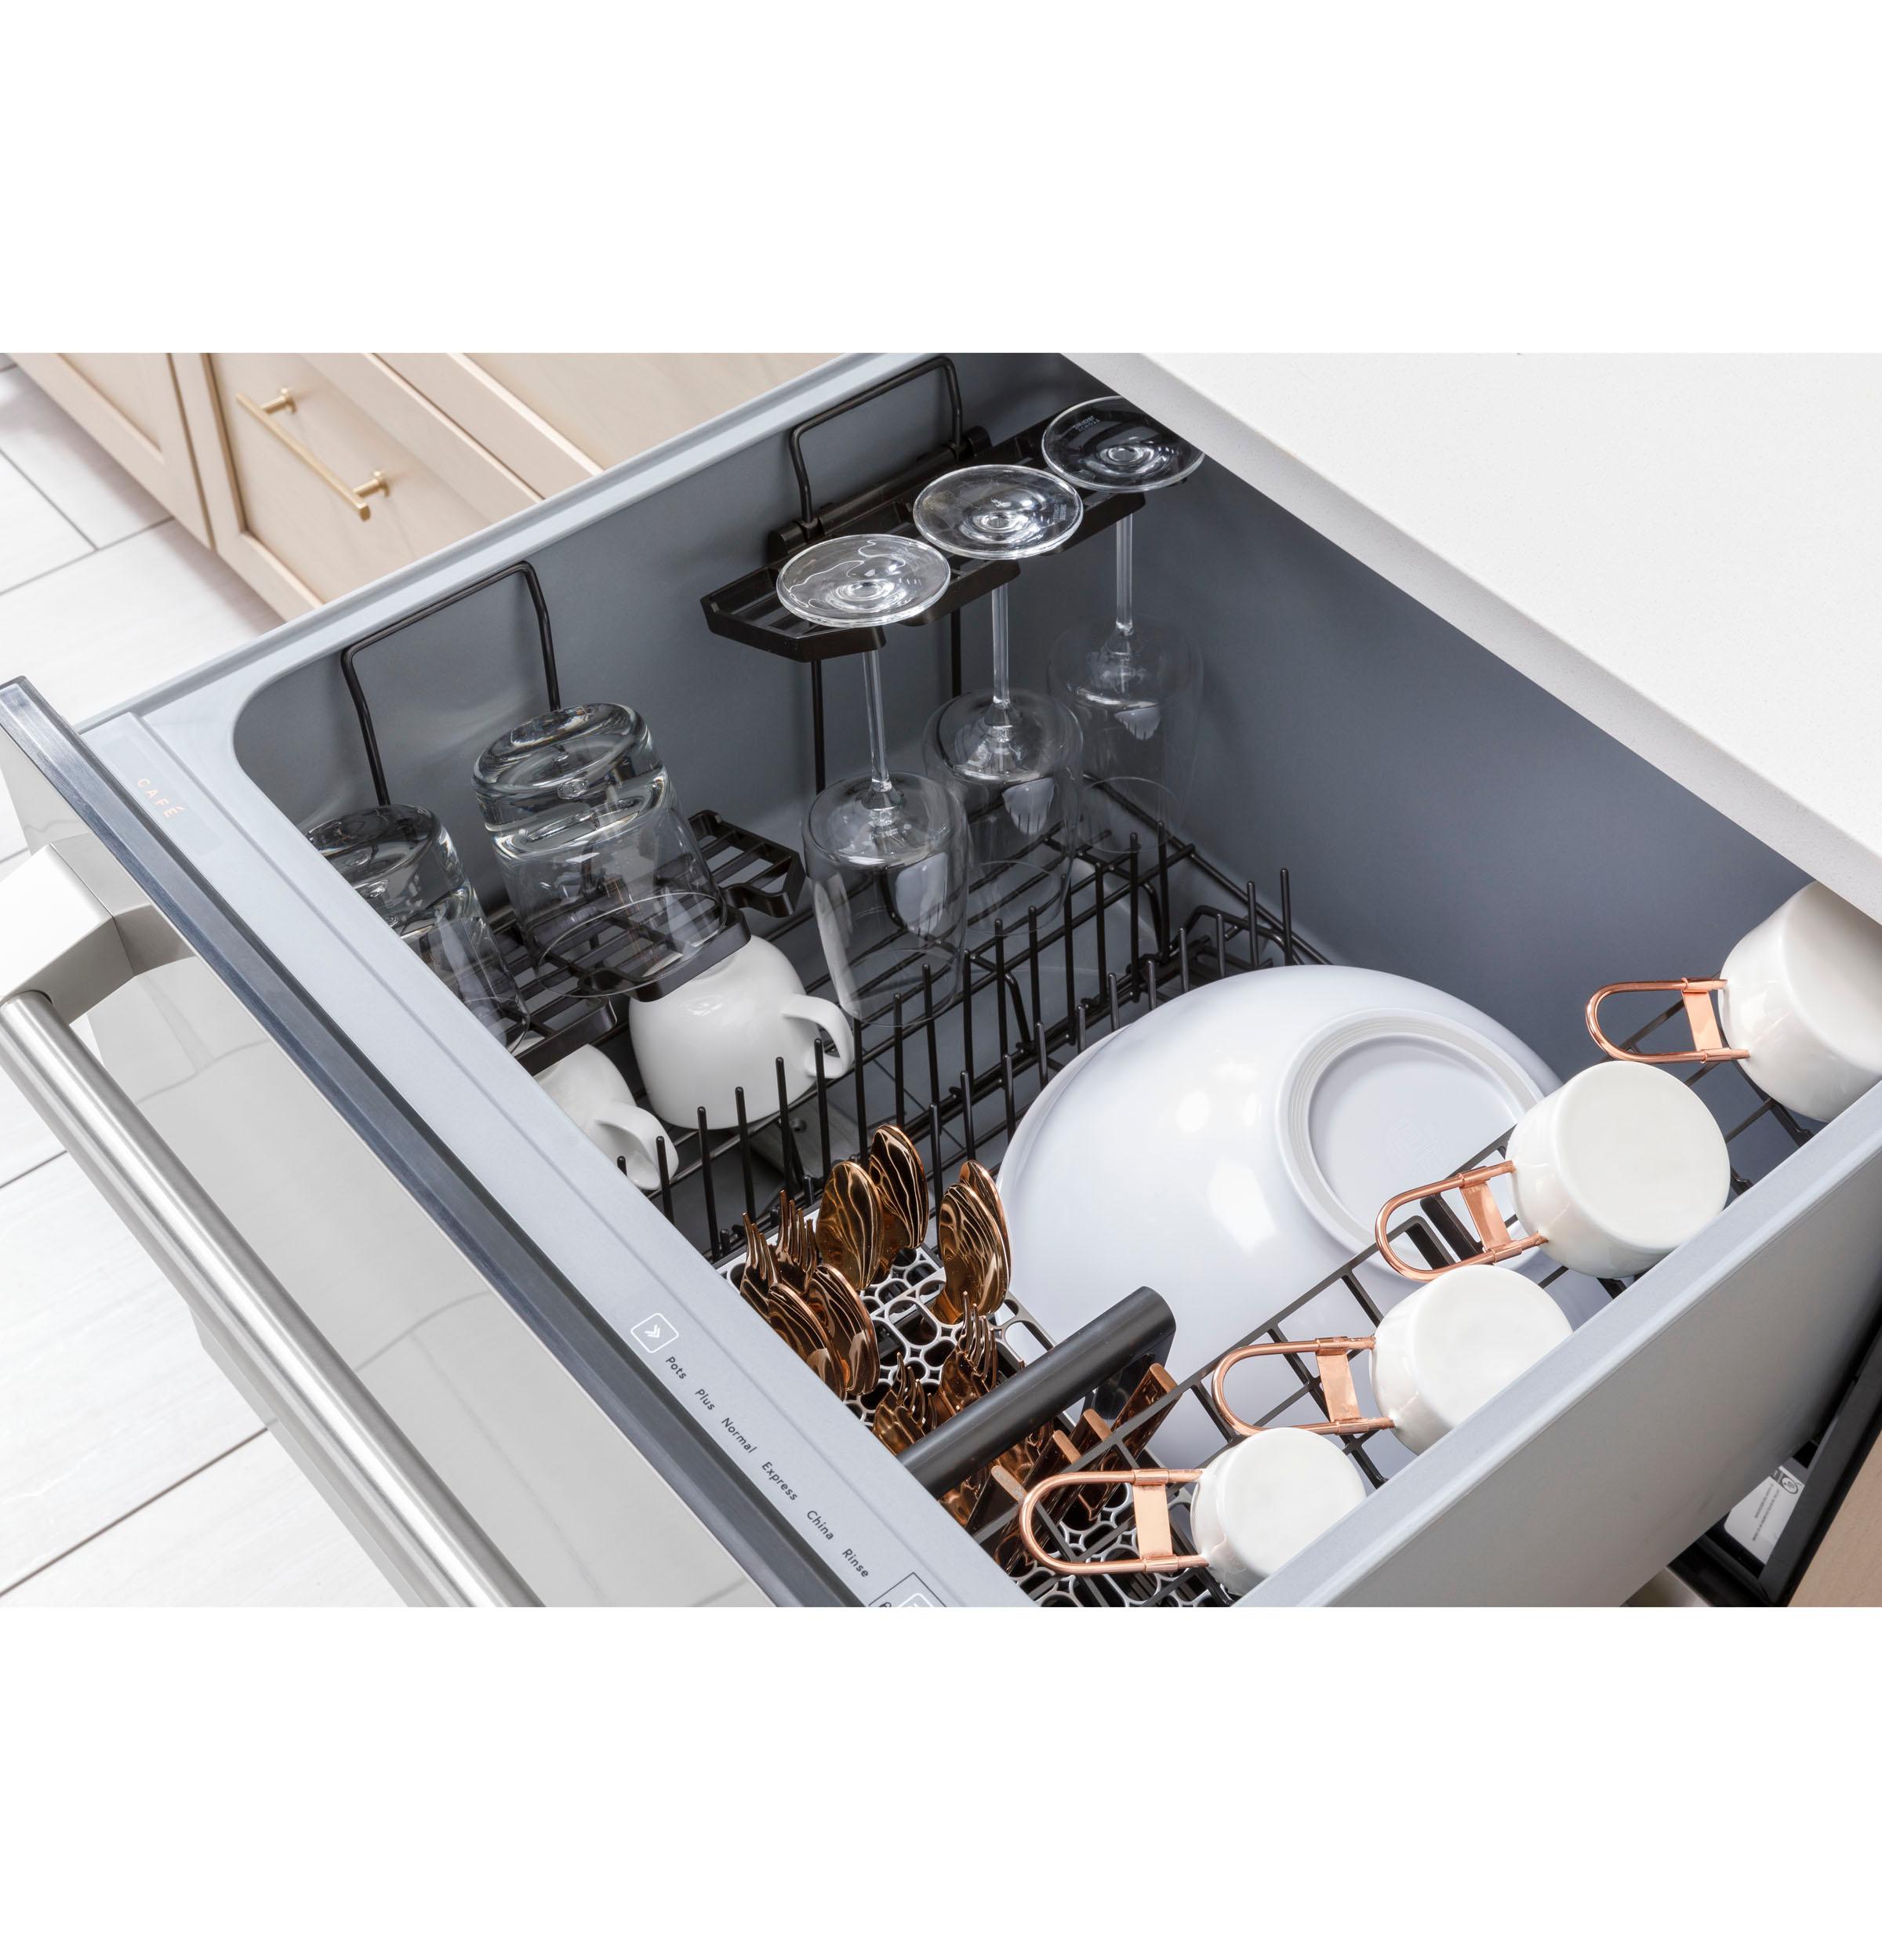 Cafe Caf(eback)™ ENERGY STAR Smart Single Drawer Dishwasher